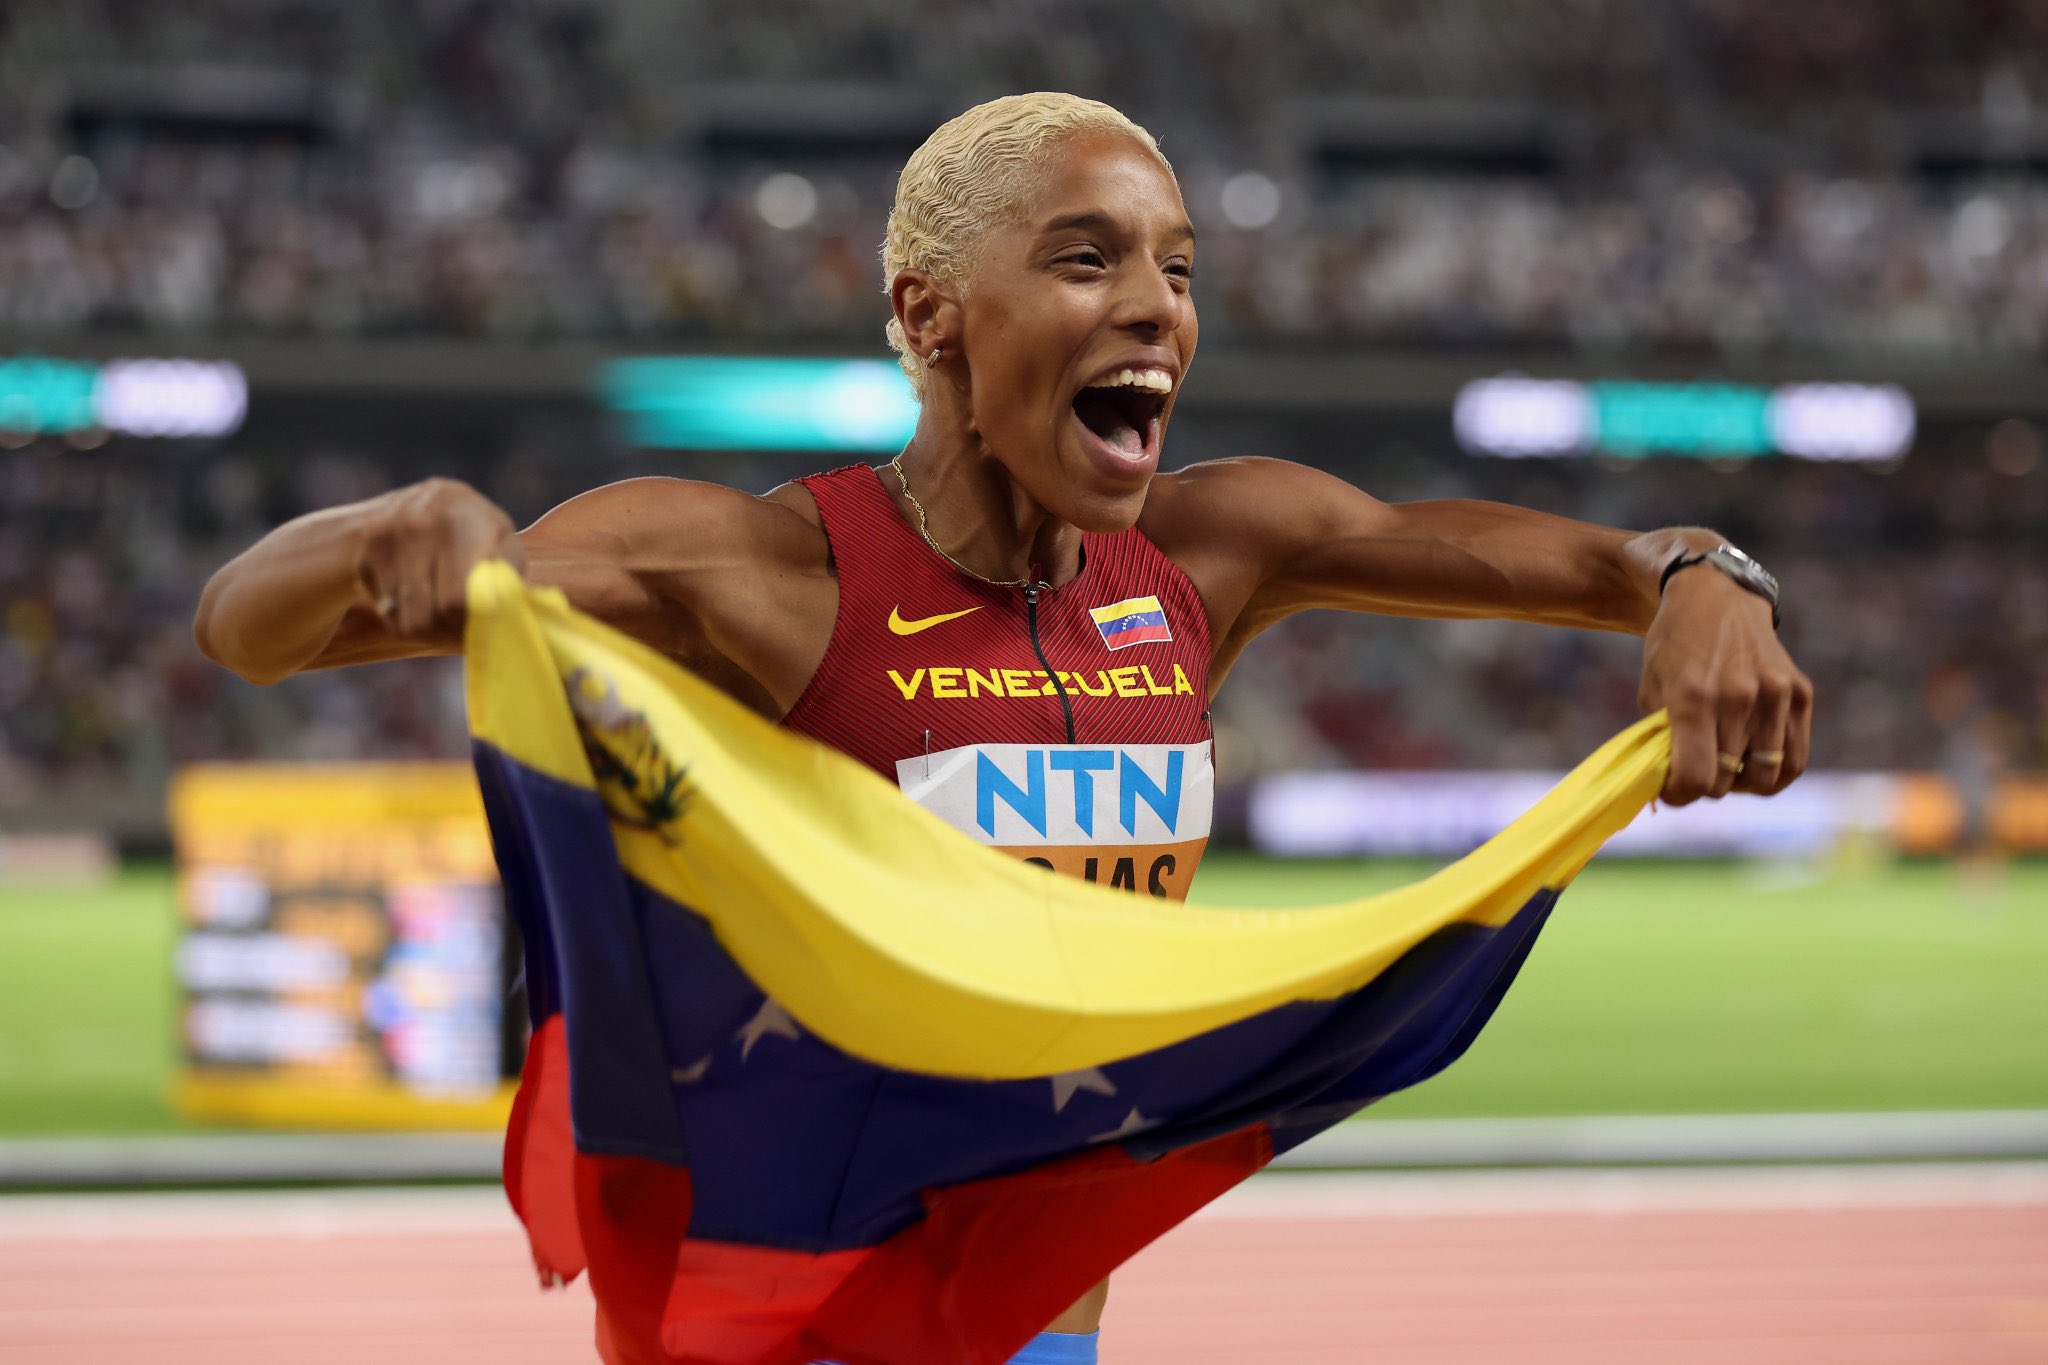 La atleta venezolana no podrá defender su marca obtenida en el Mundial Bajo Techo 2022. 